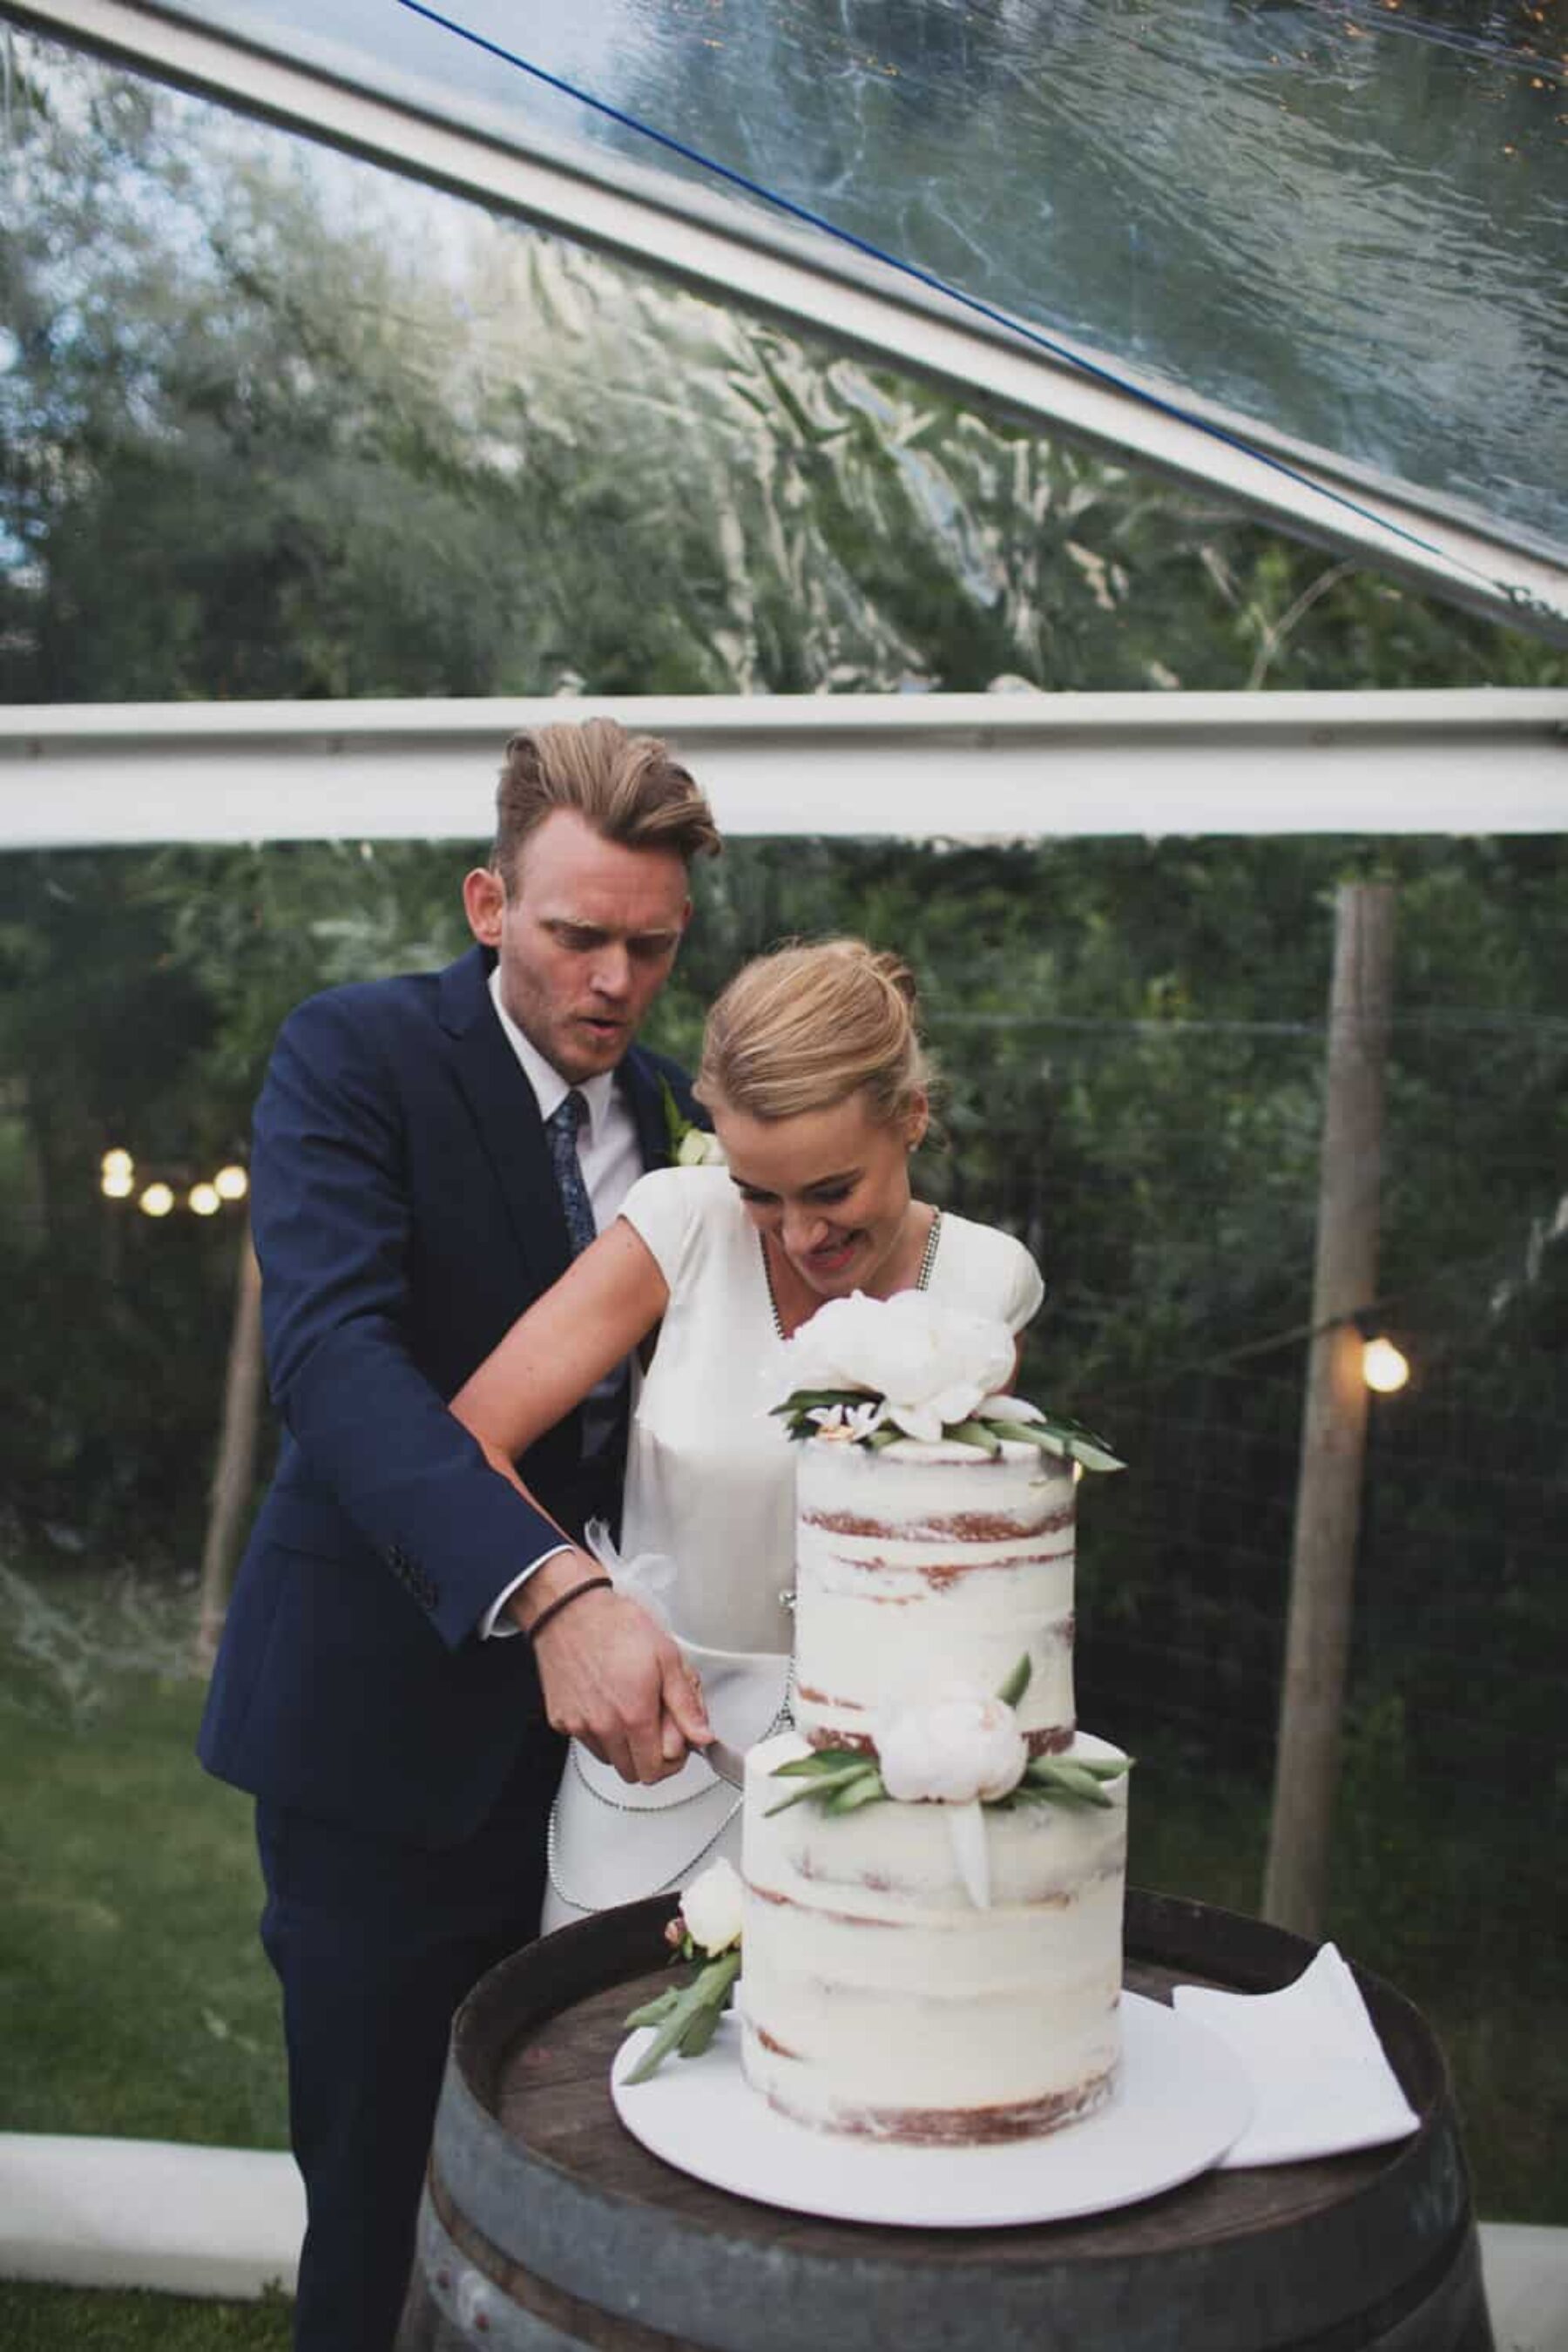 semi-naked wedding cake